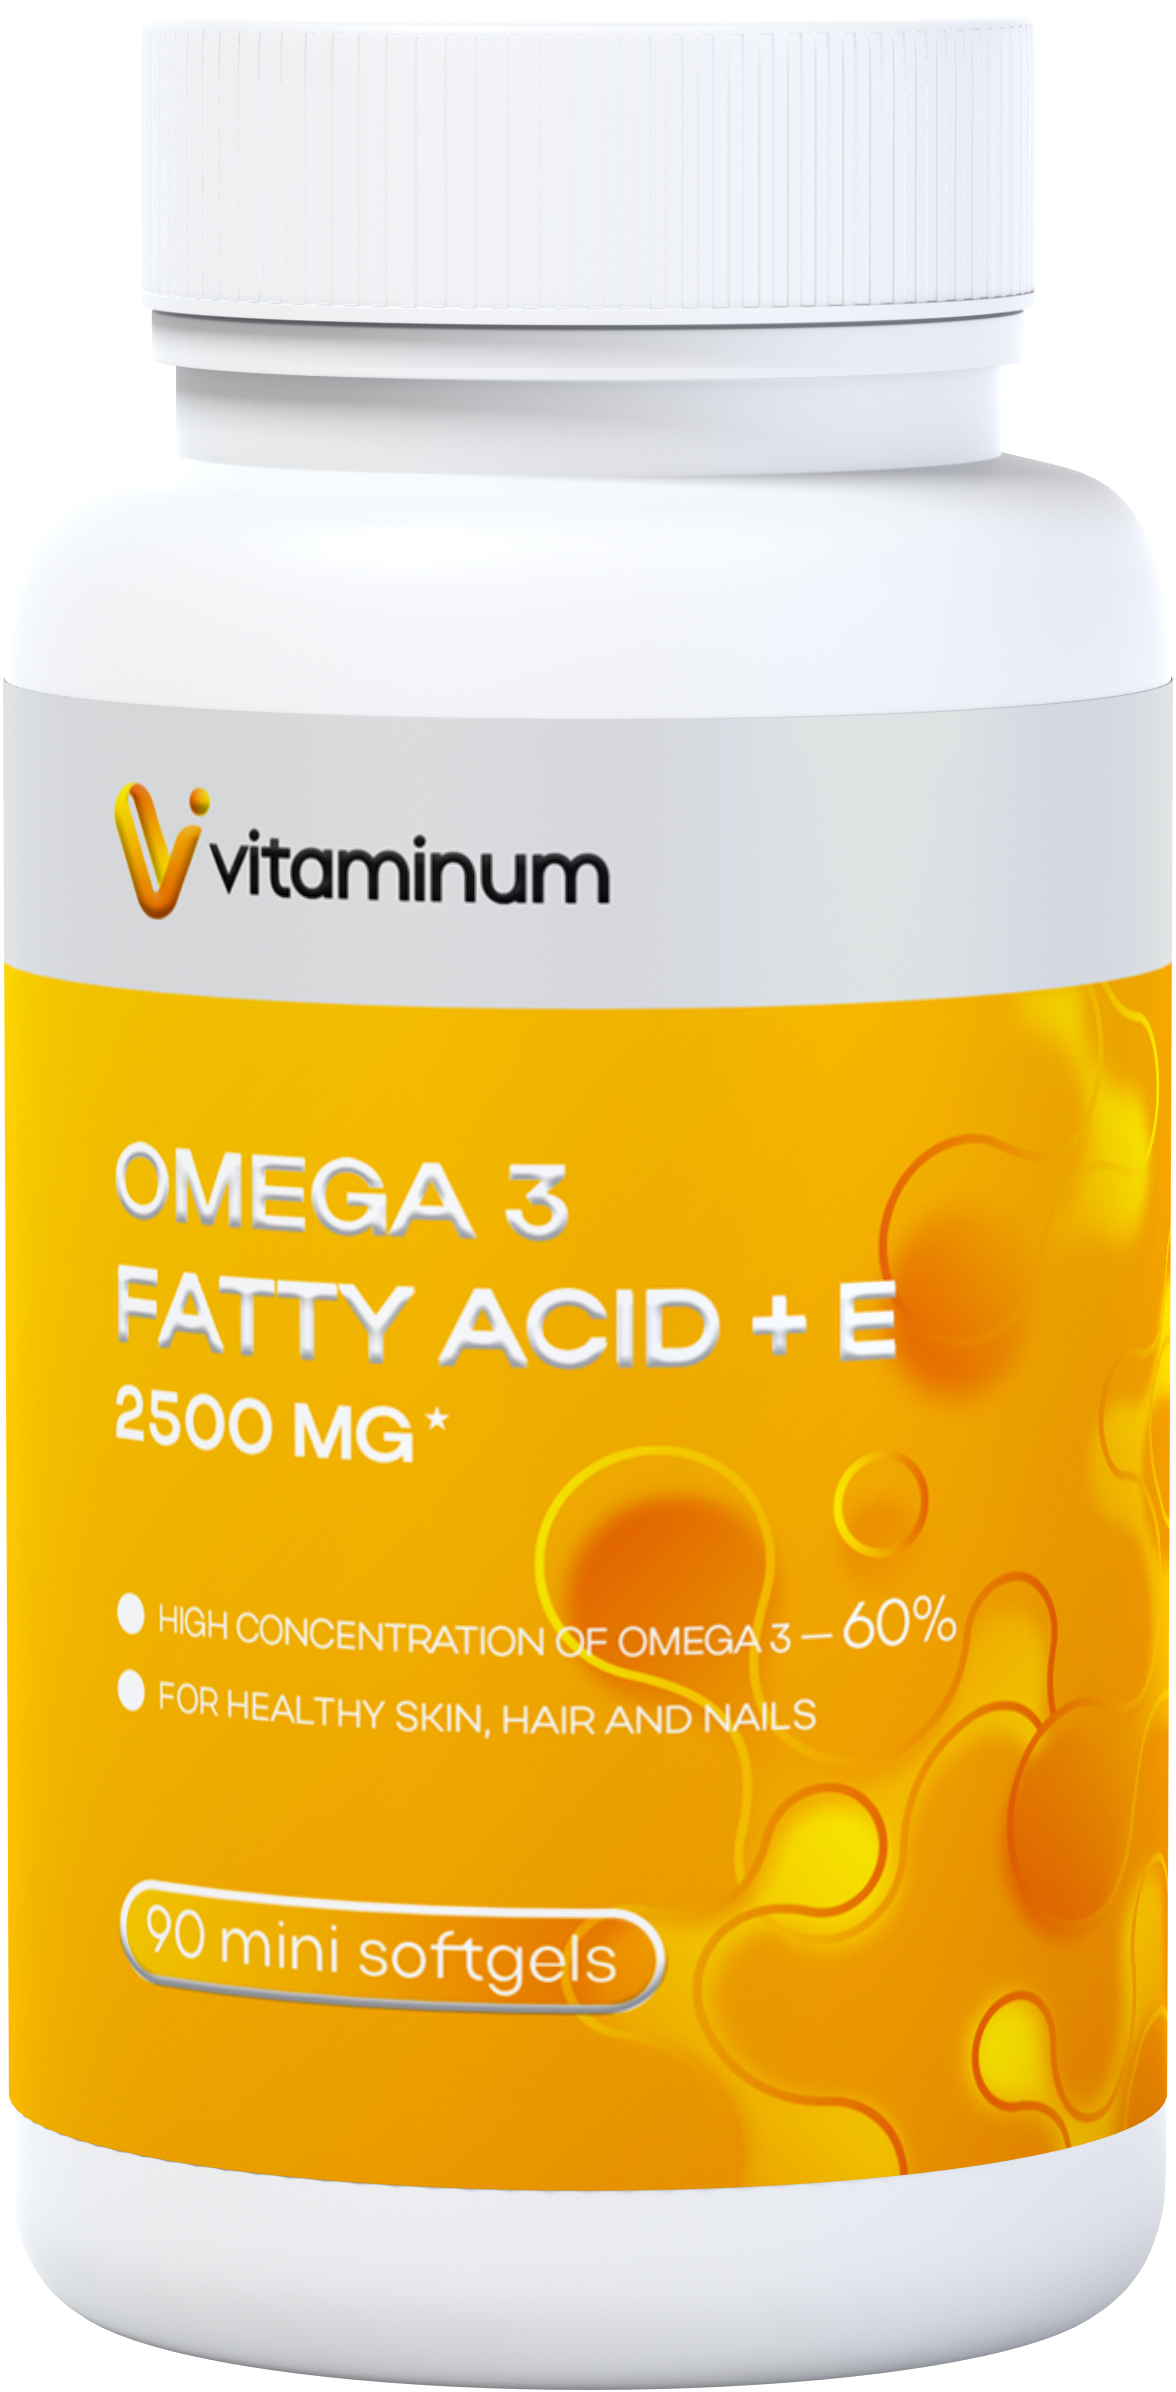  Vitaminum ОМЕГА 3 60% + витамин Е (2500 MG*) 90 капсул 700 мг  в Димитровграде